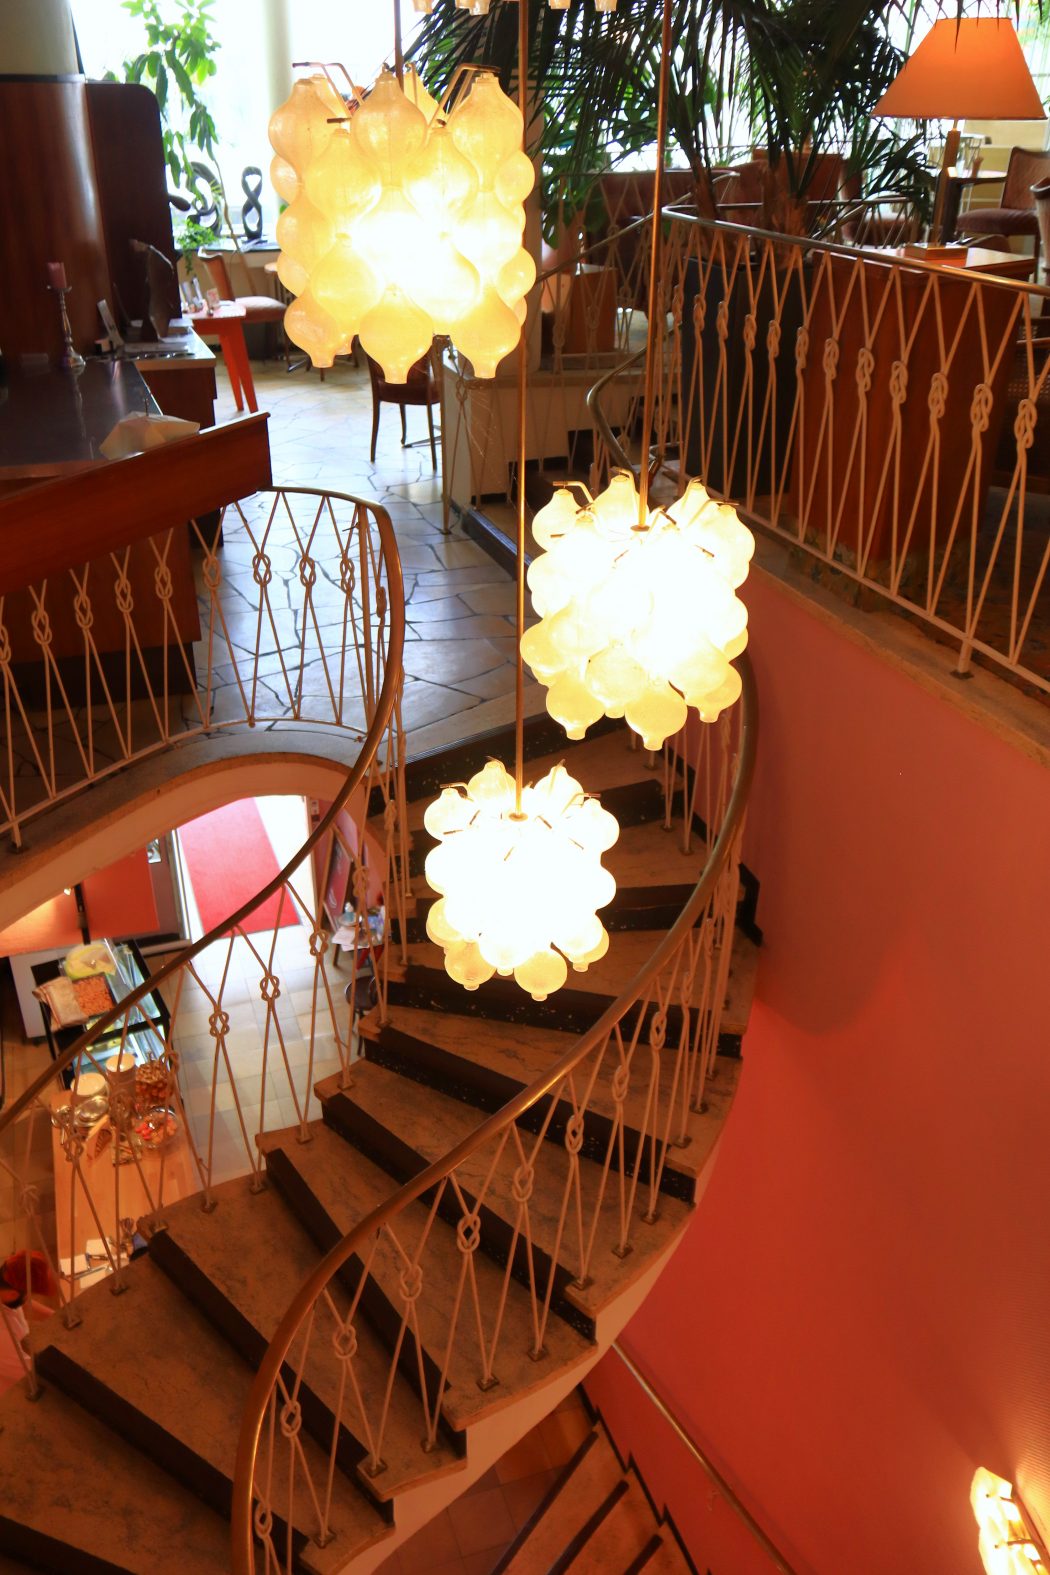 Das Foto zeigt das Treppenhaus im Café Leye im Szeneviertel Wiesenviertel in Essen